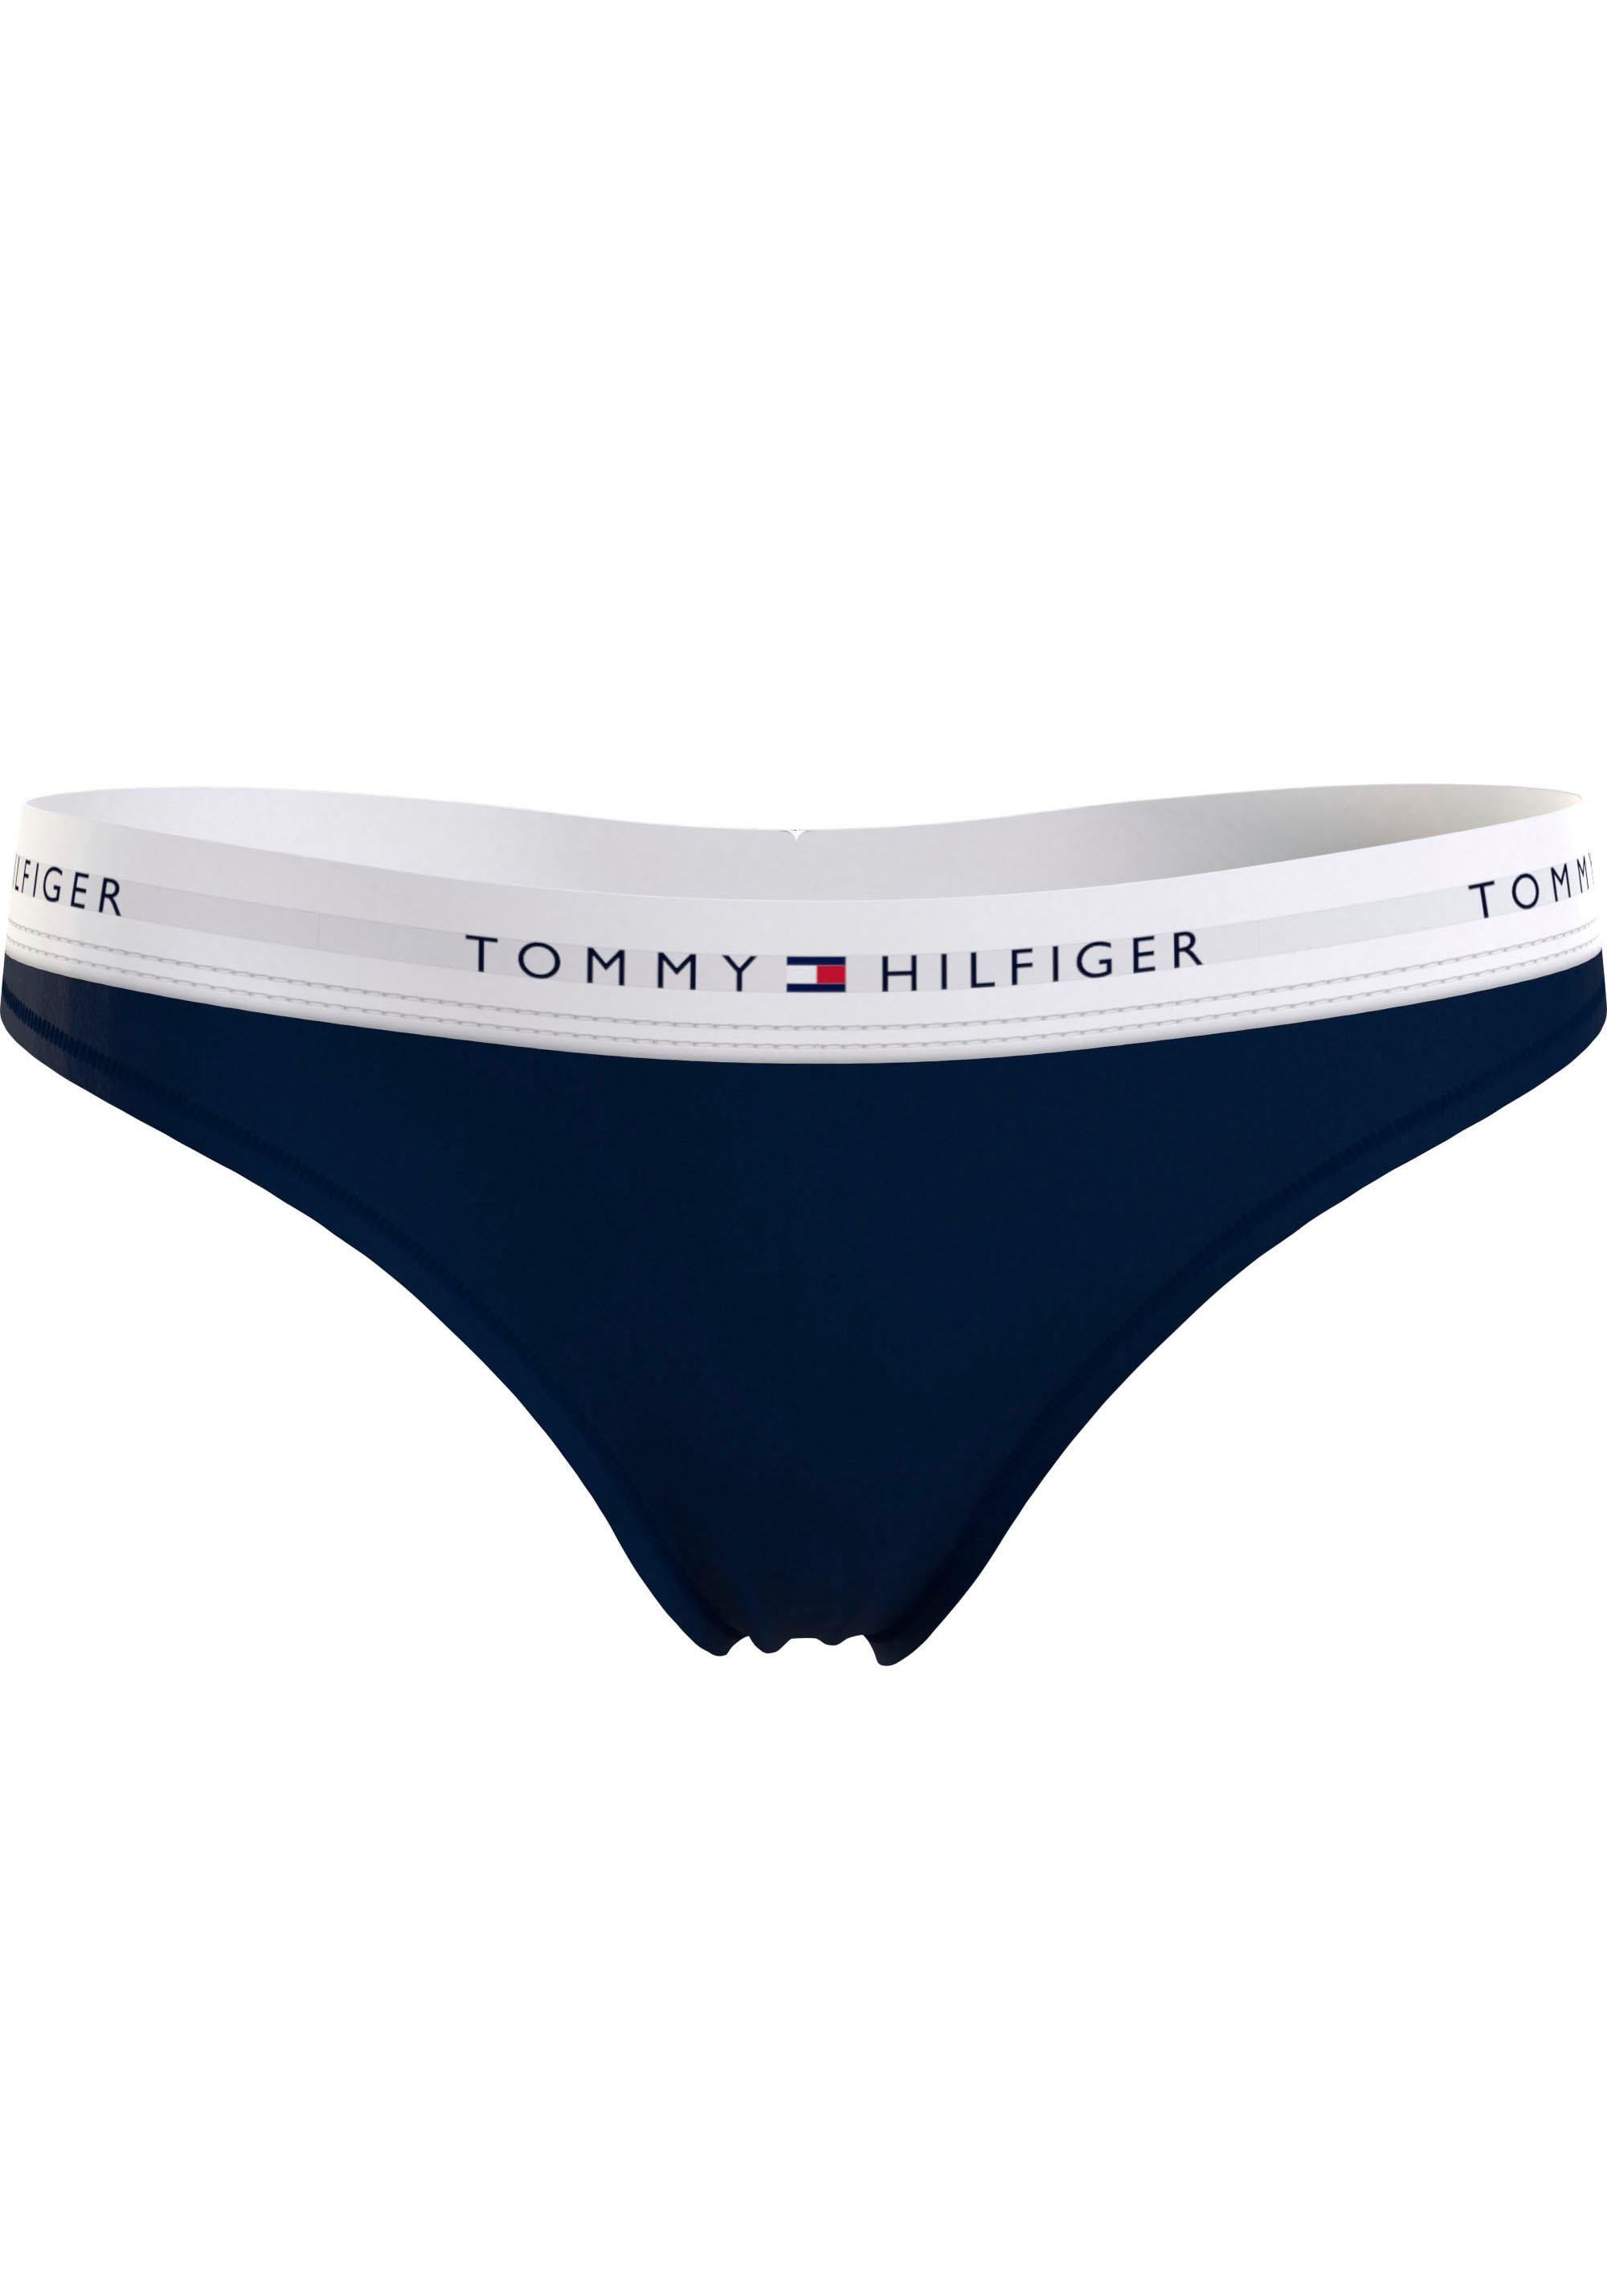 Logo auf Hilfiger Tommy Taillenbund T-String, & Underwear auf dem Wäsche mit Rechnung bestellen